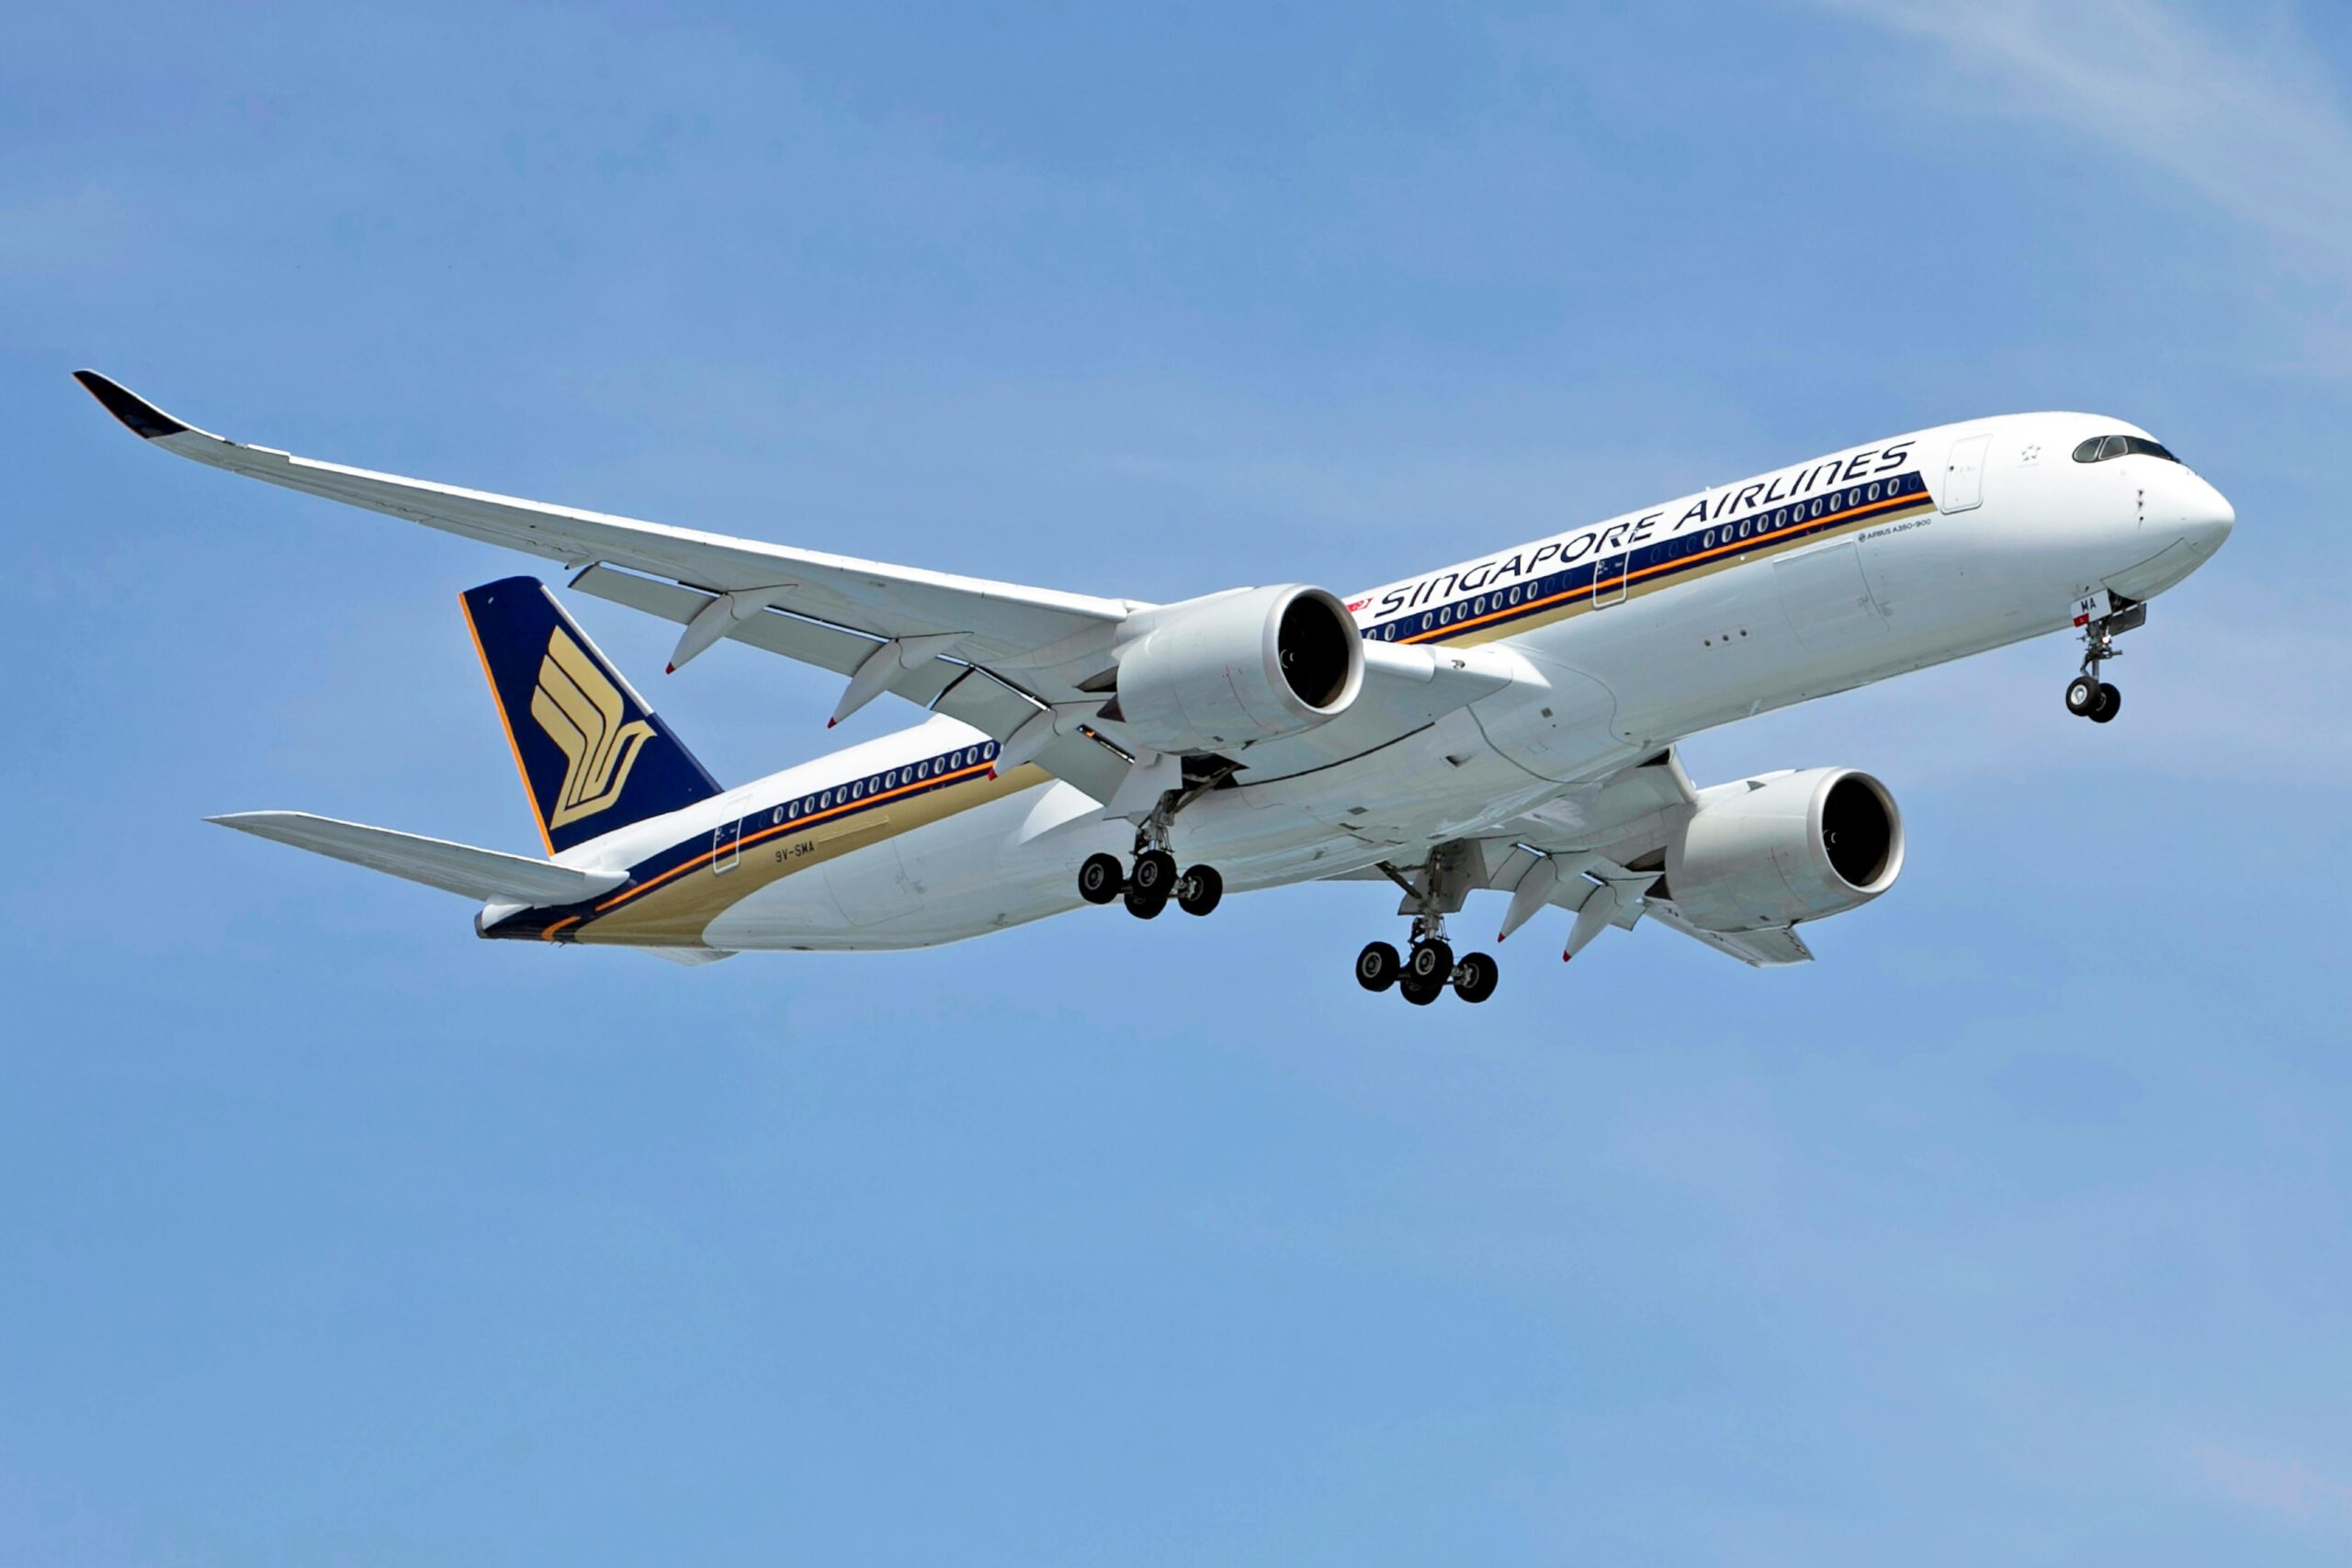 Vuelo de Singapore Airlines sufre graves turbulencias: Un muerto y decenas de heridos